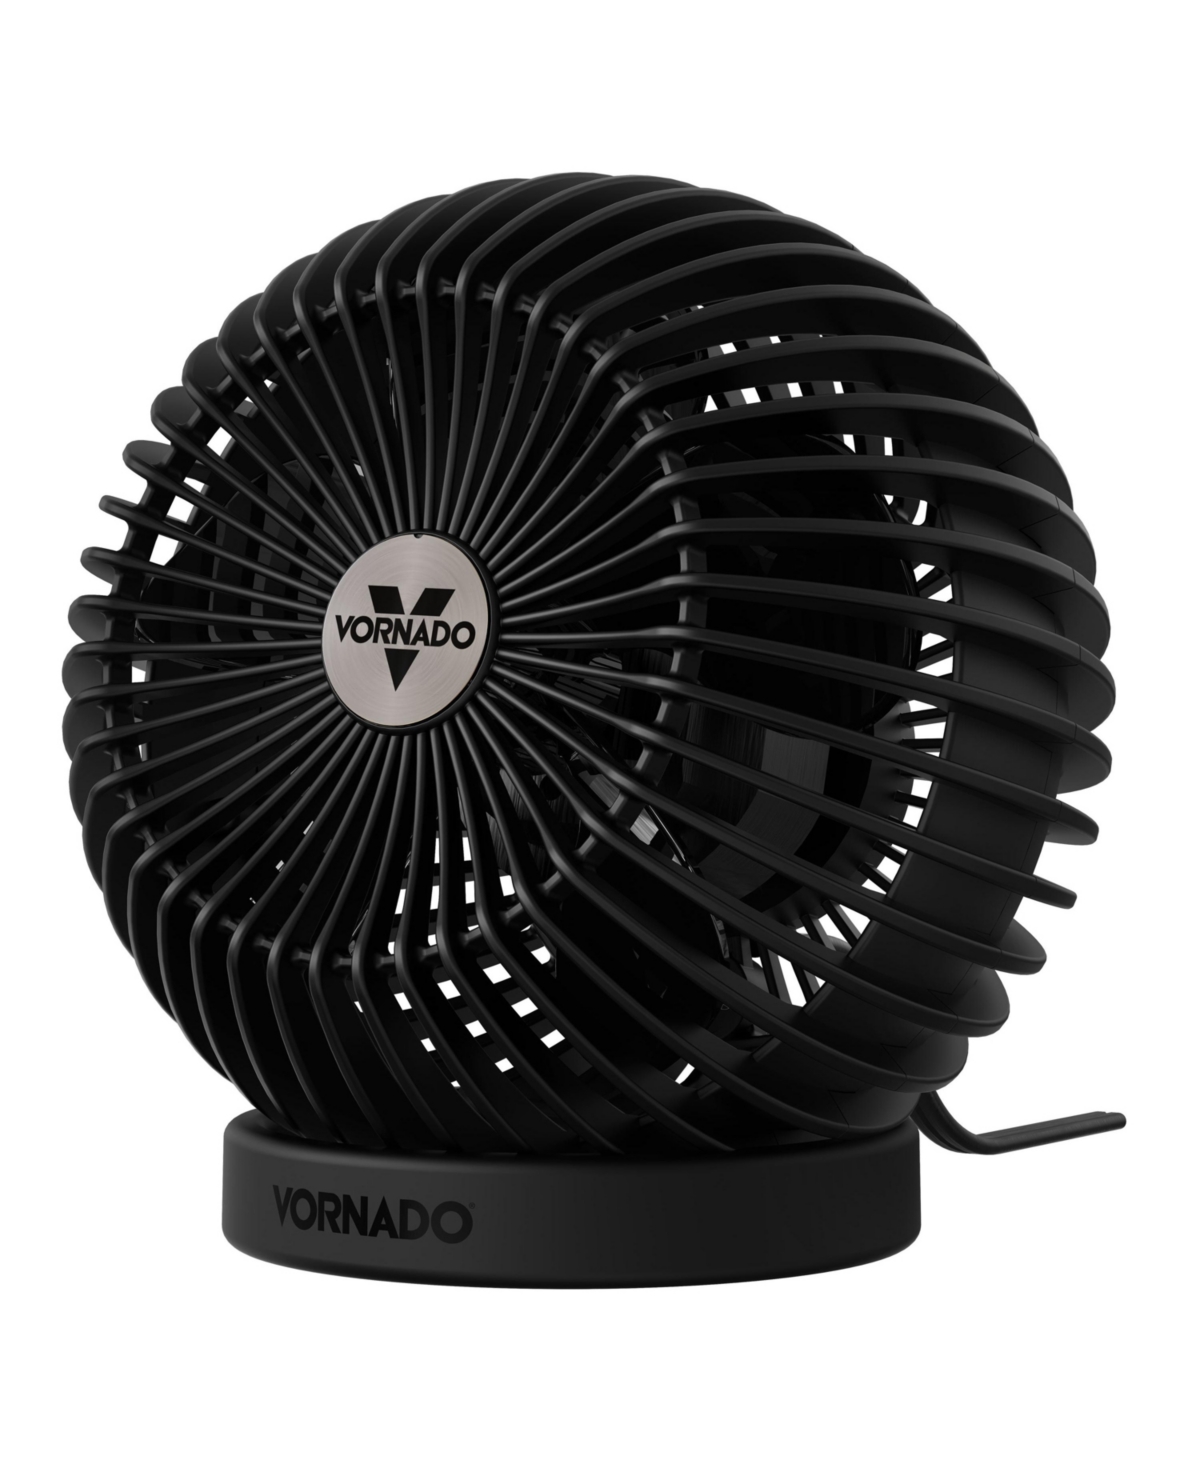 Vornado Sphere Personal Fan, Small Desktop Globe Fan In Black